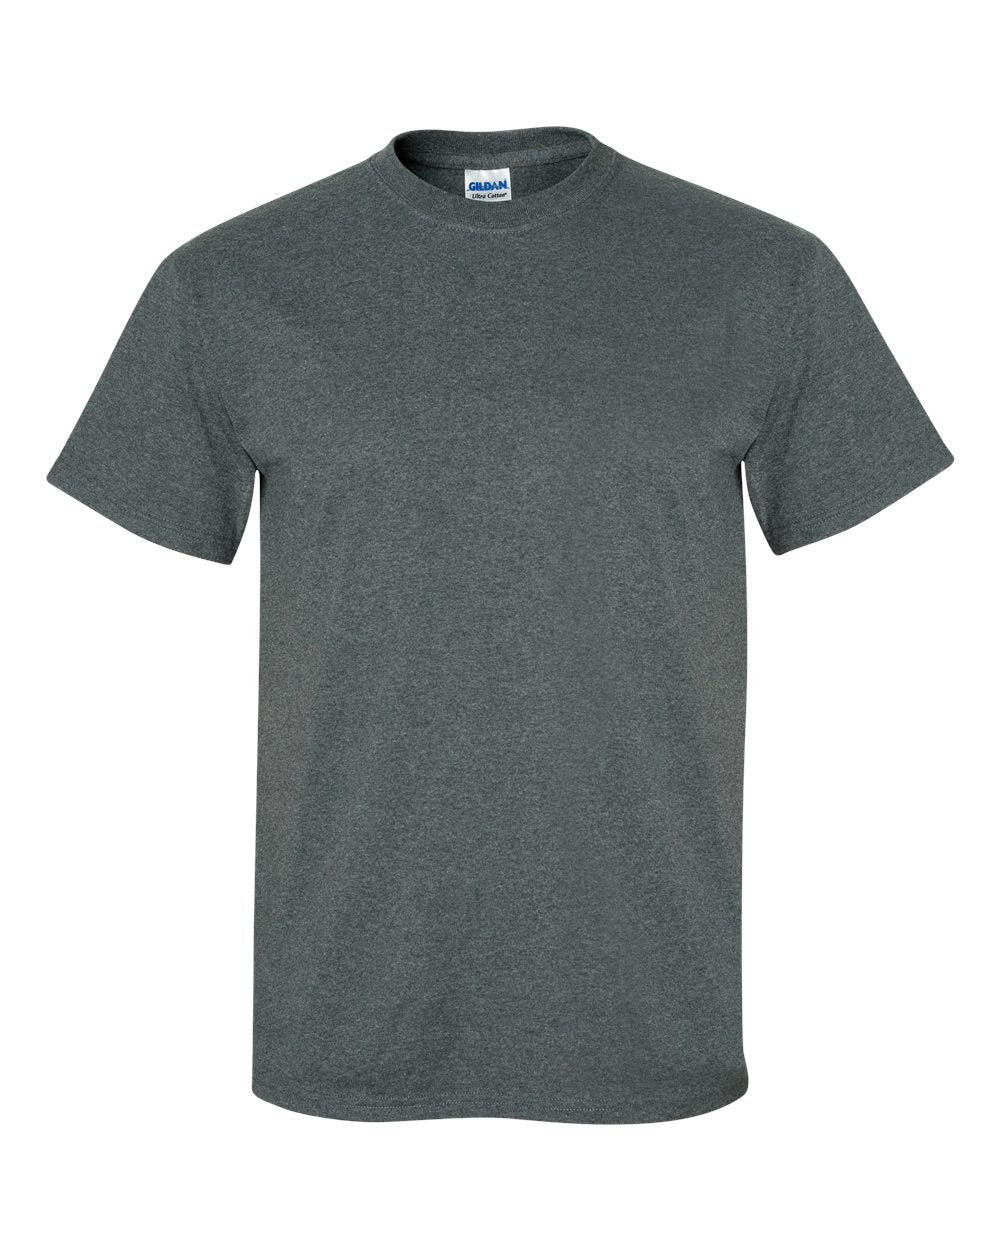 Gildan - Ultra Cotton® T-Shirt - 2000 - Budget Promotion T-shirt